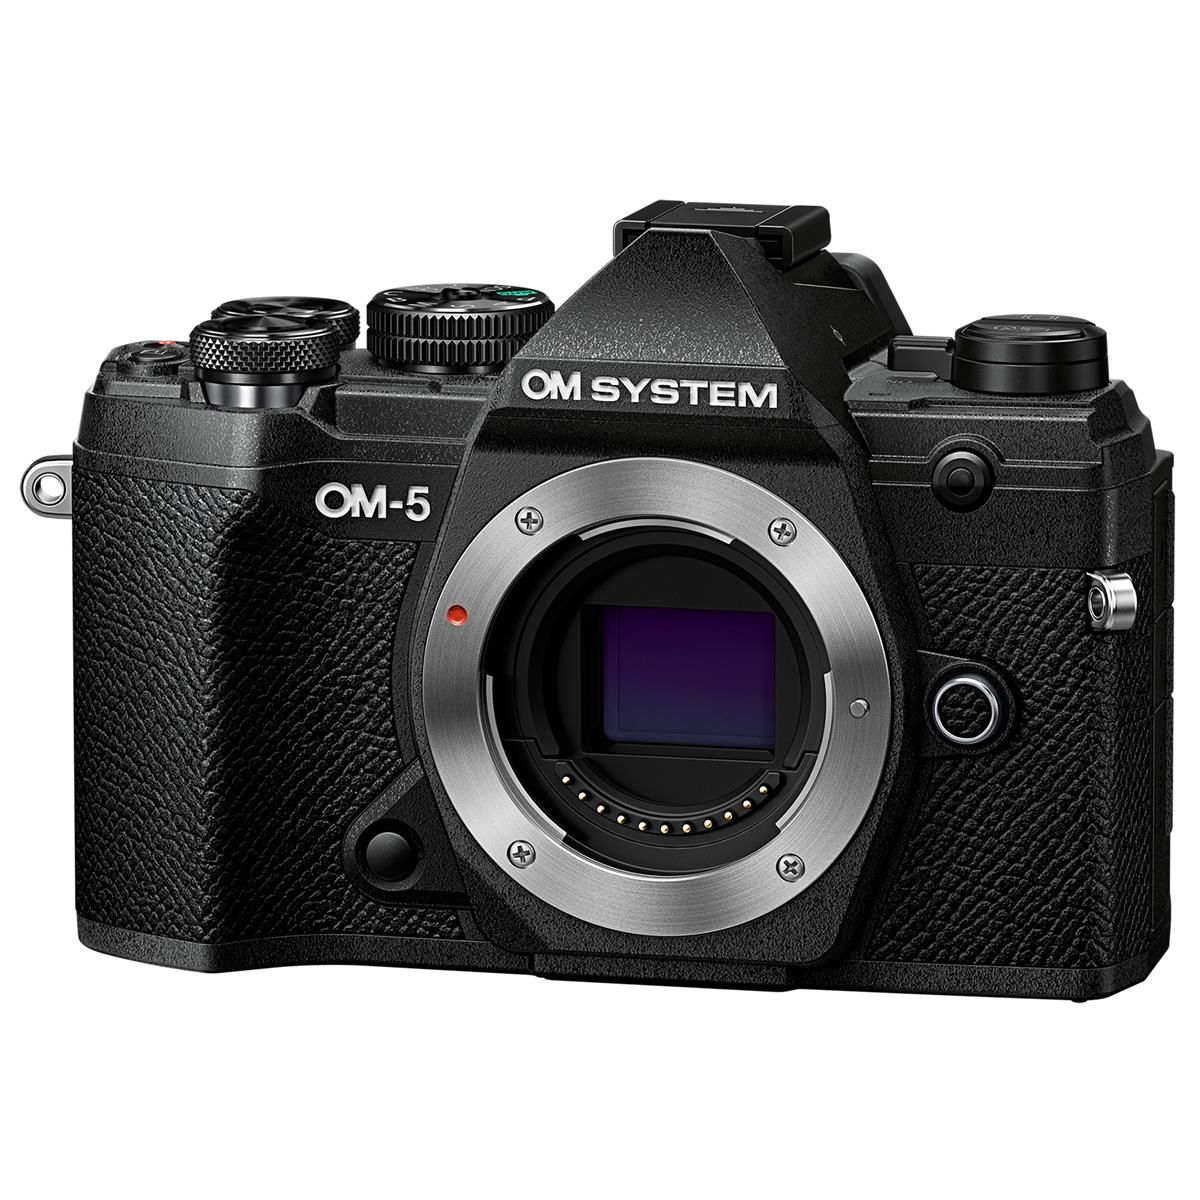 Image of OM SYSTEM OM-5 Mirrorless Digital Camera Body